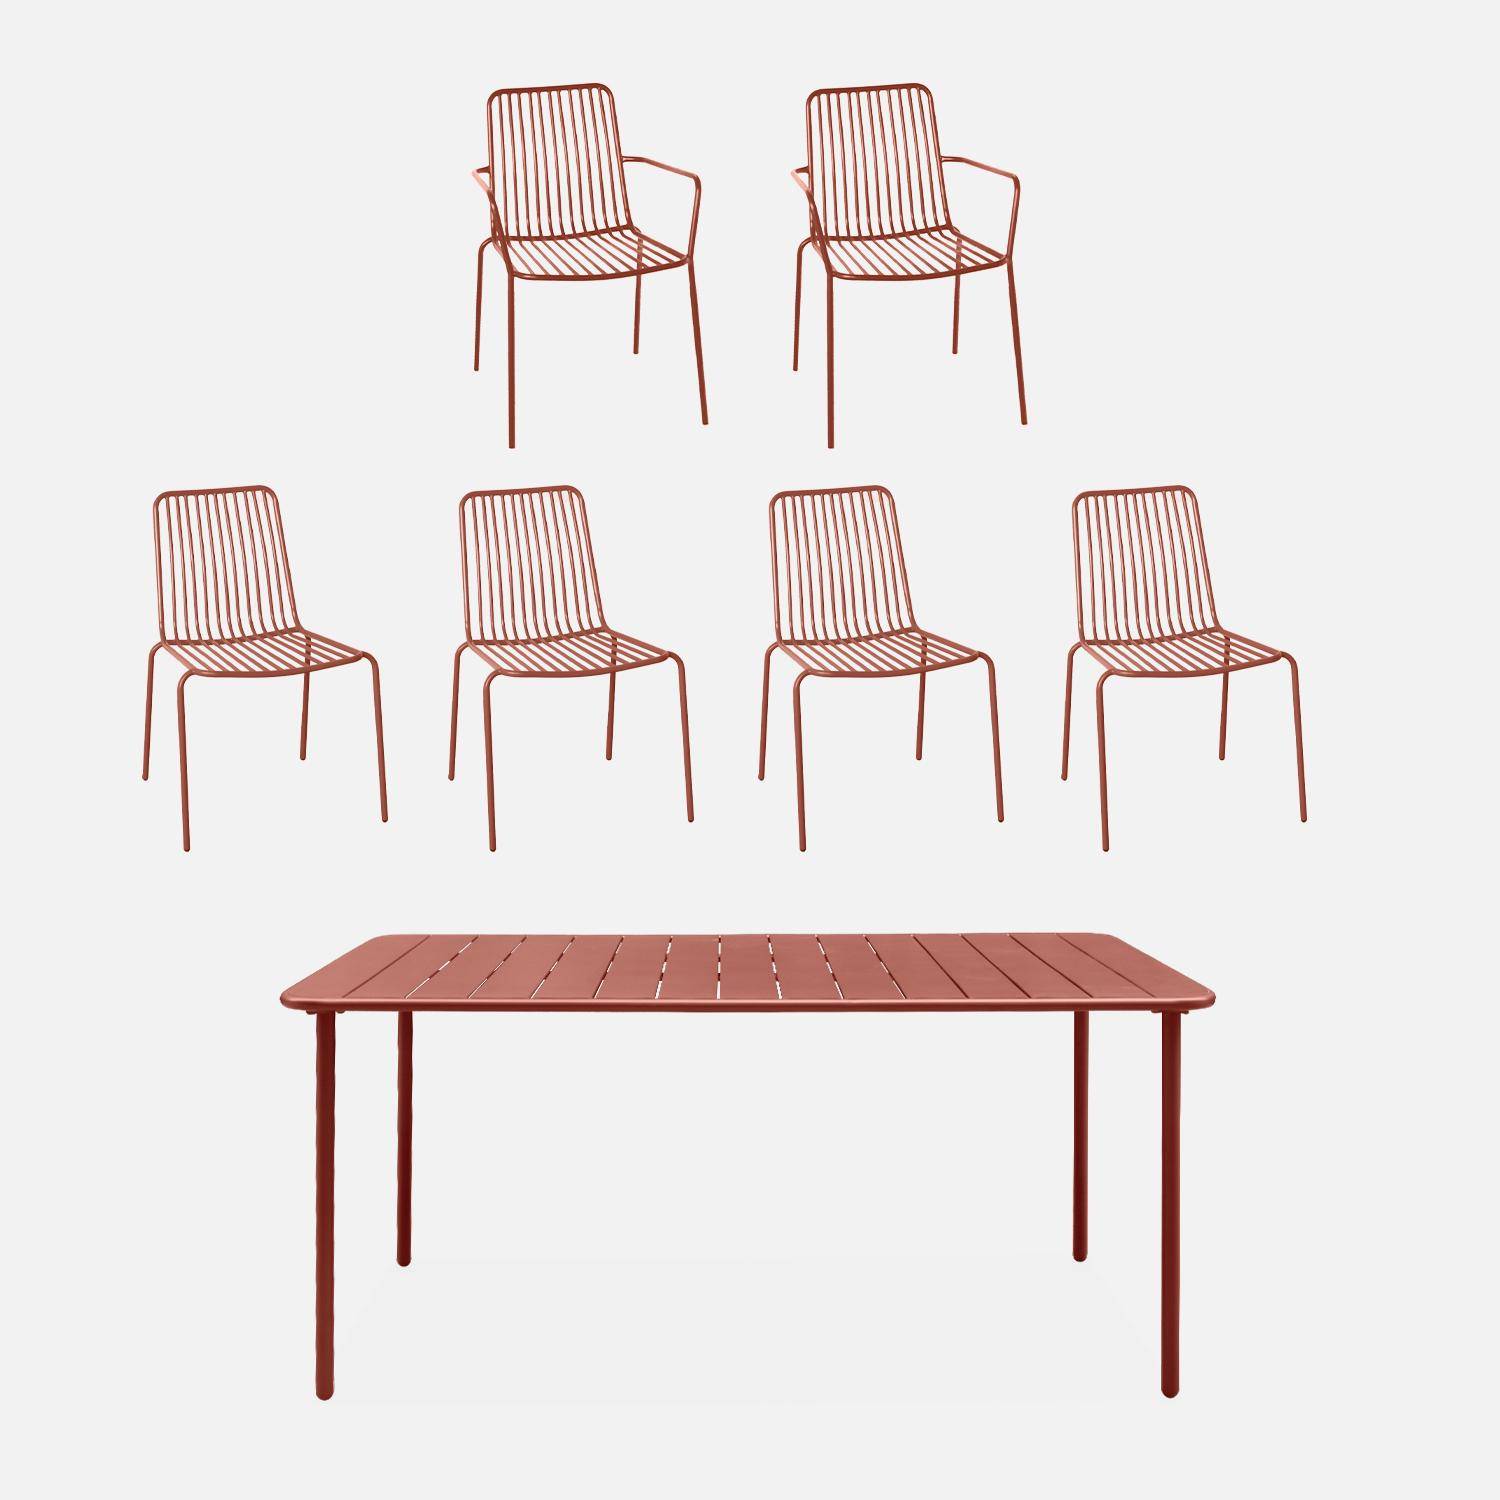 Table de jardin métal + 4 chaises et 2 fauteuils terracotta Photo1